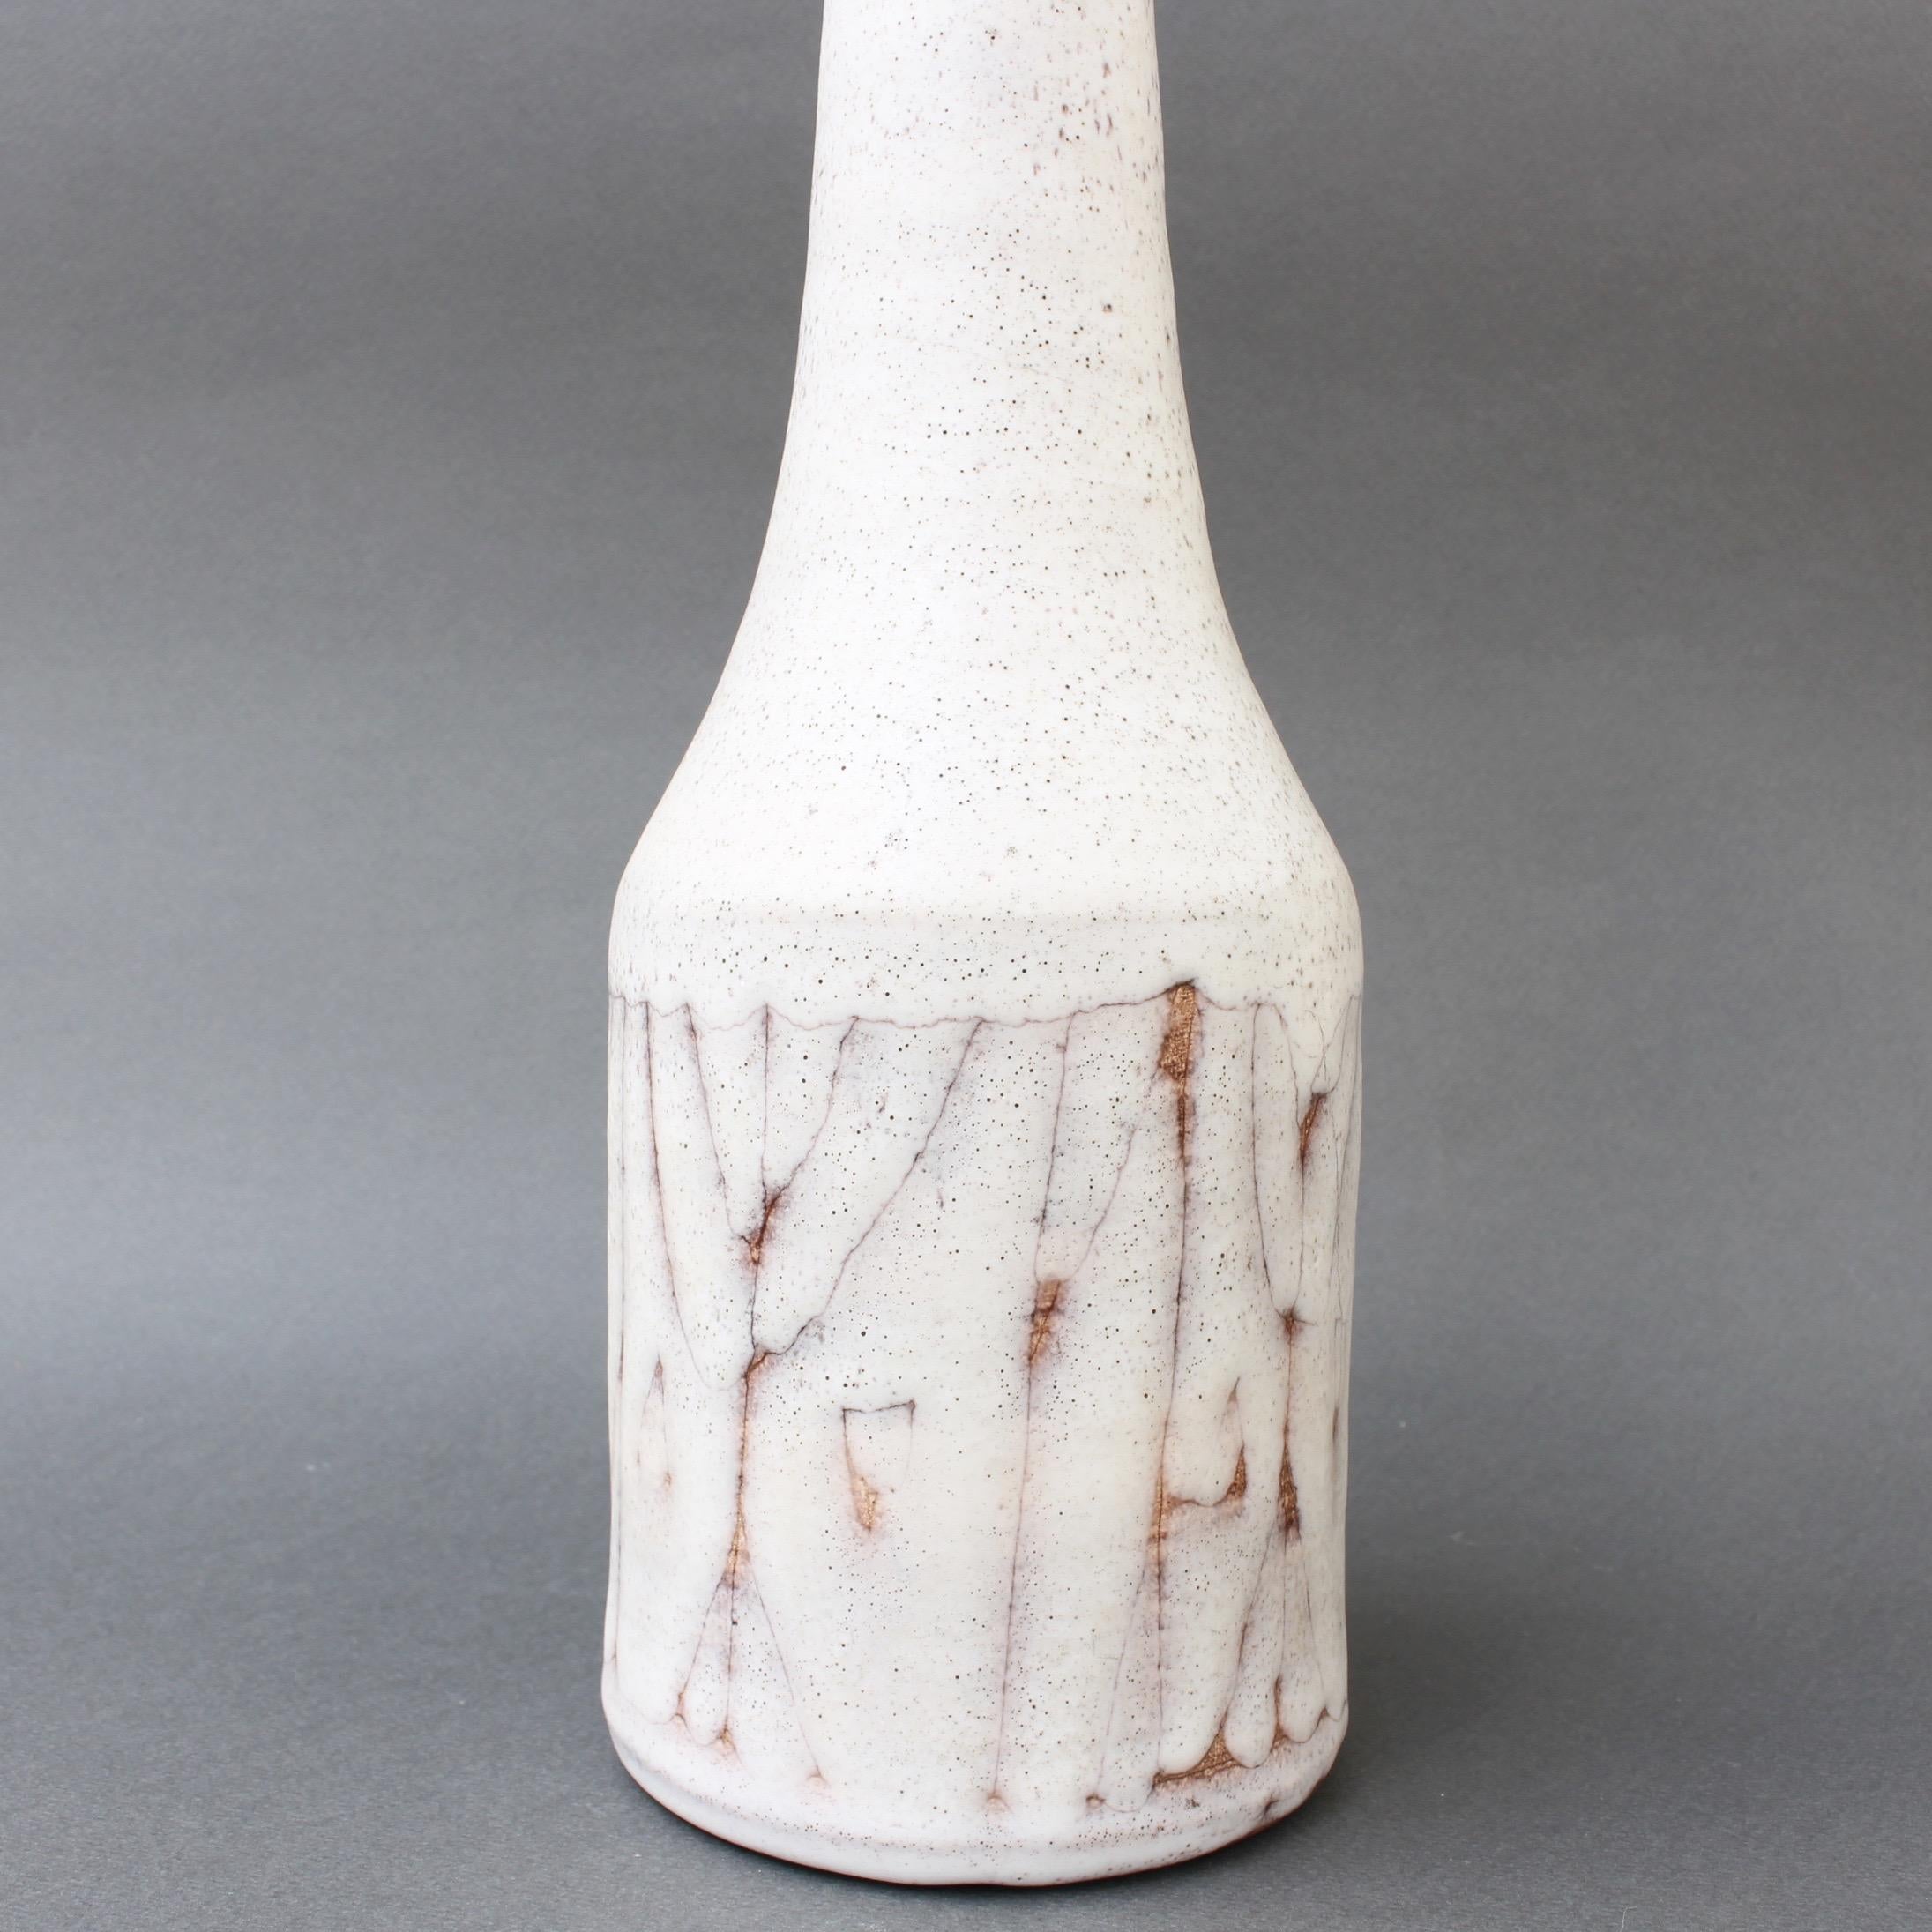 Midcentury Ceramic Flower Vase by Jacques Pouchain, Atelier Dieulefit 1